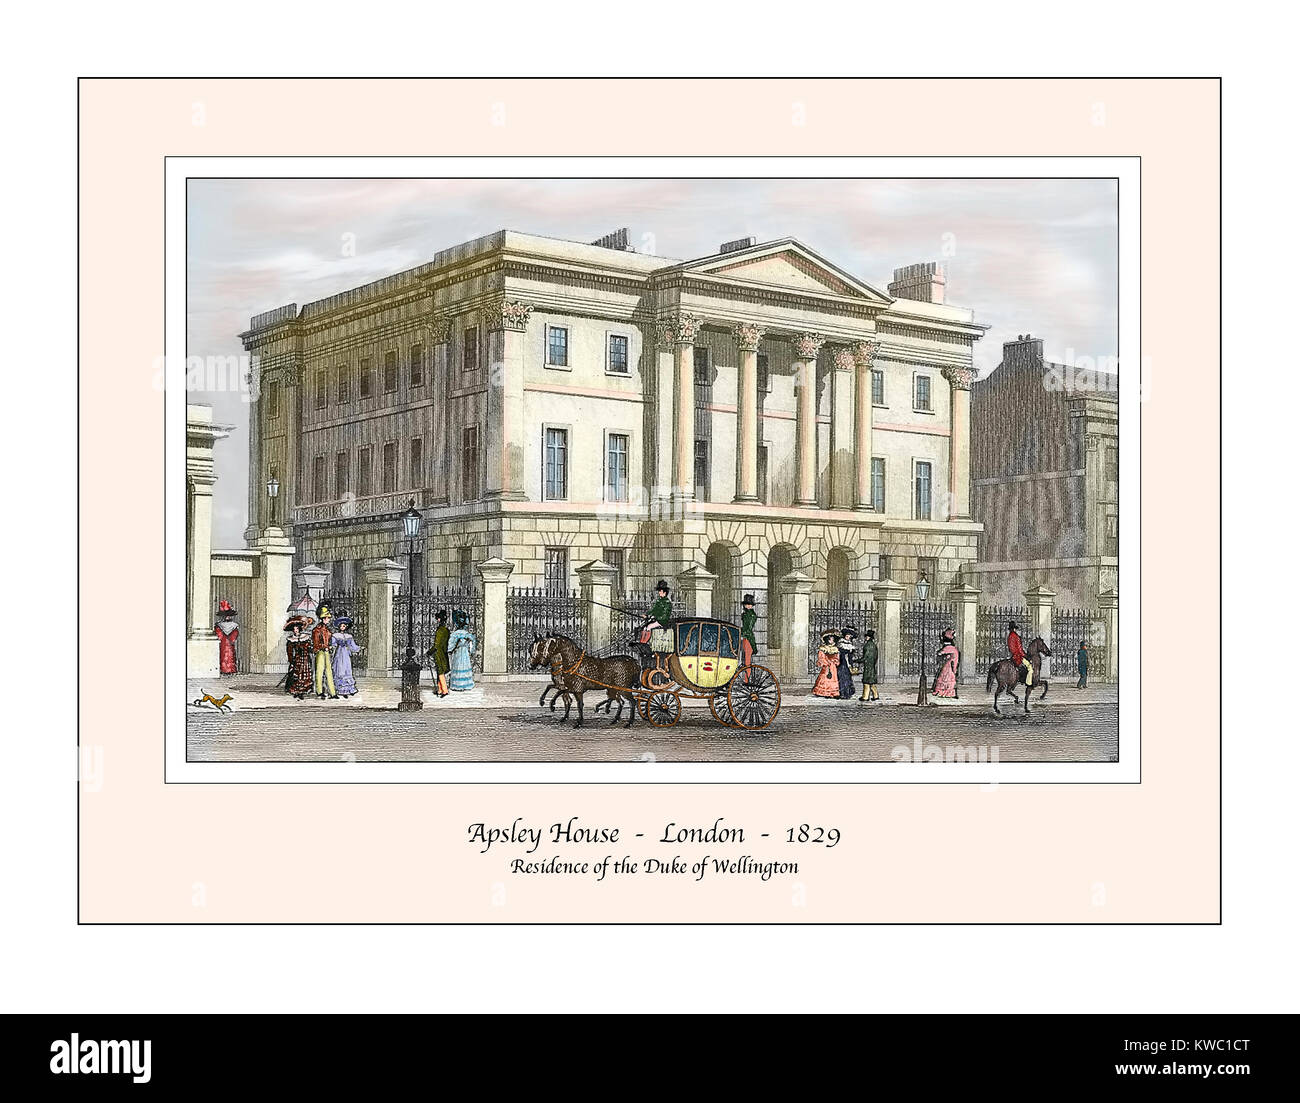 Apsley House Londres Original Design basé sur une gravure du xixe siècle Banque D'Images